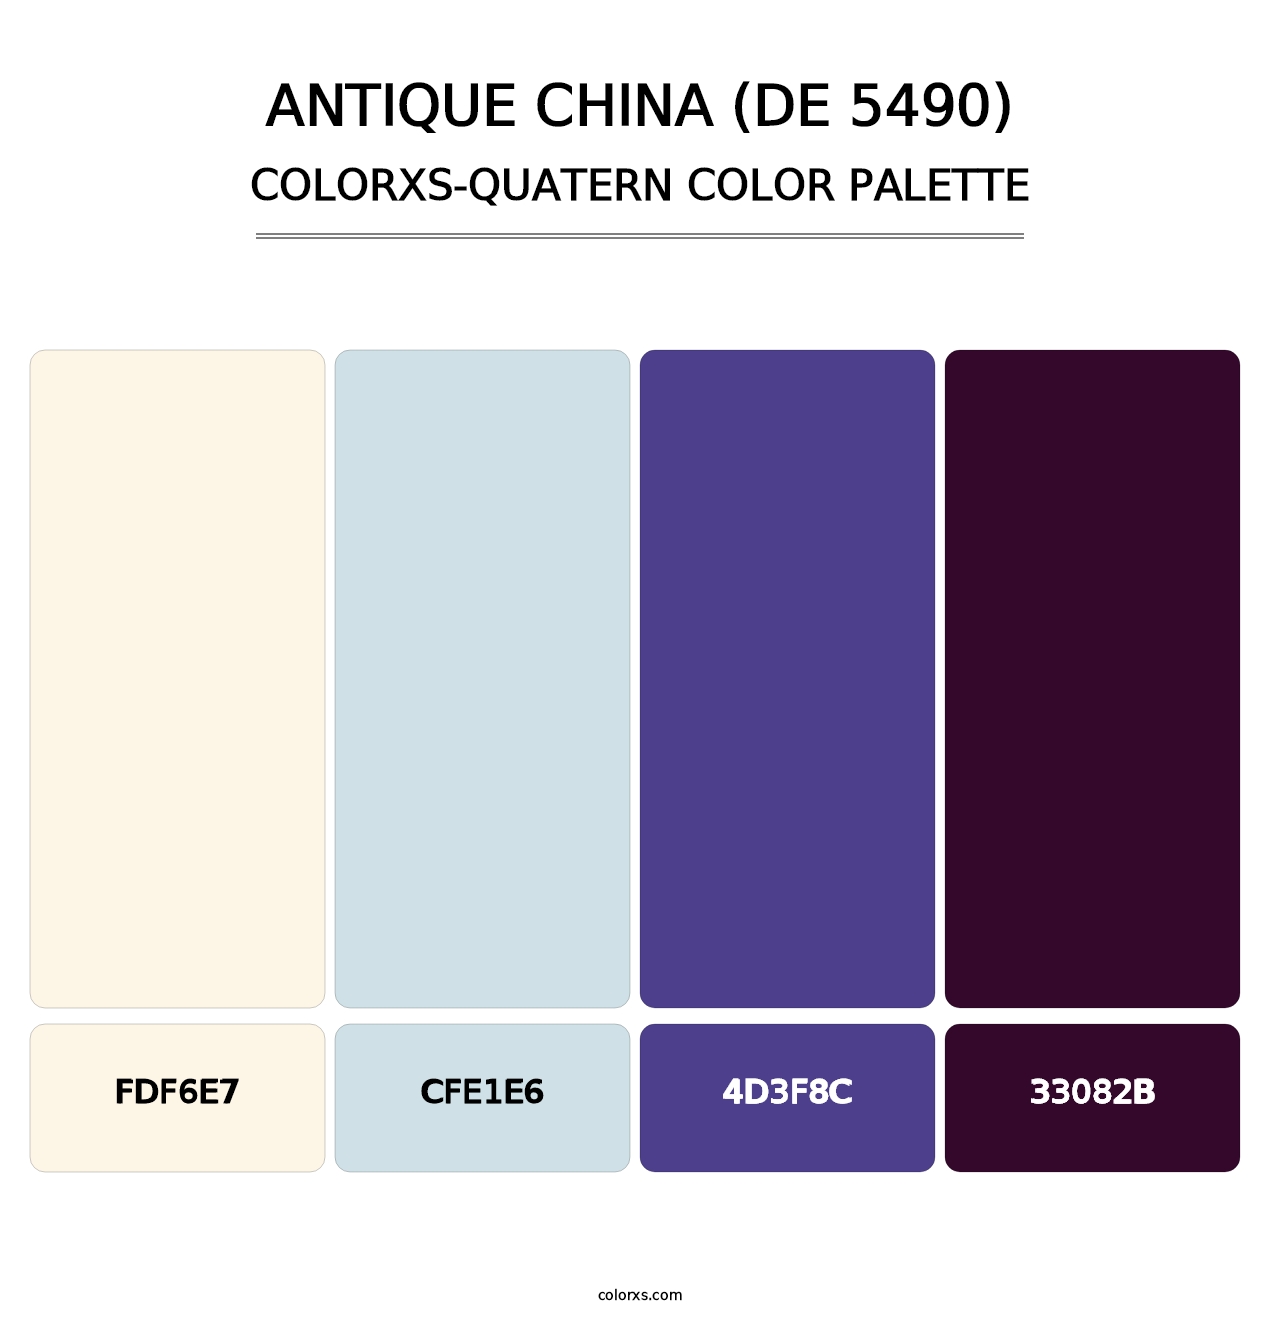 Antique China (DE 5490) - Colorxs Quatern Palette